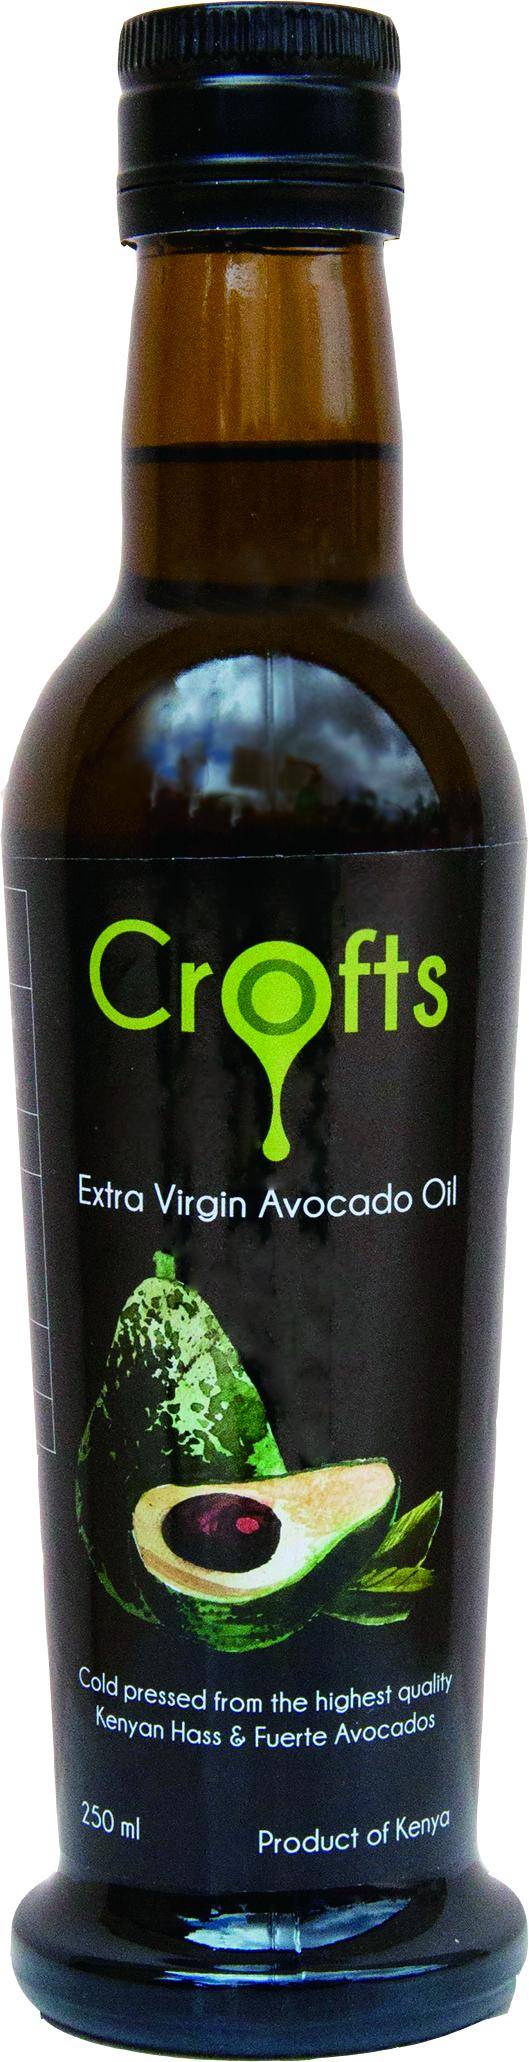 Crofts 酪梨油-來自肯亞-特級冷壓初榨